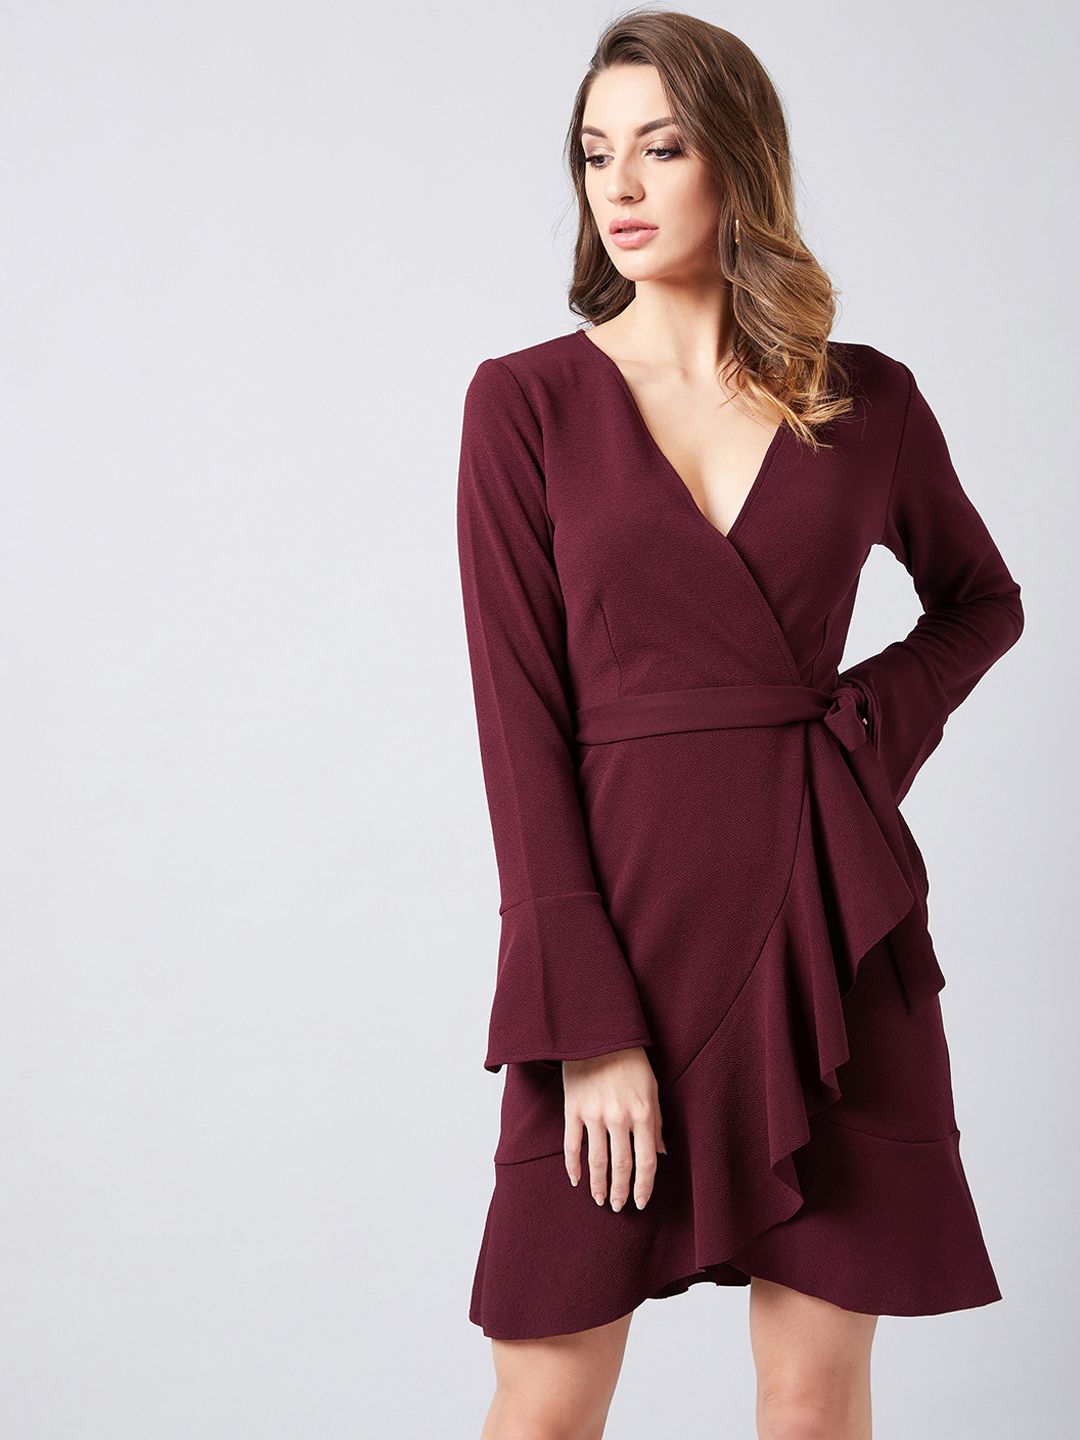 Athena Burgundy V-Neck Wrap Dress Price in India